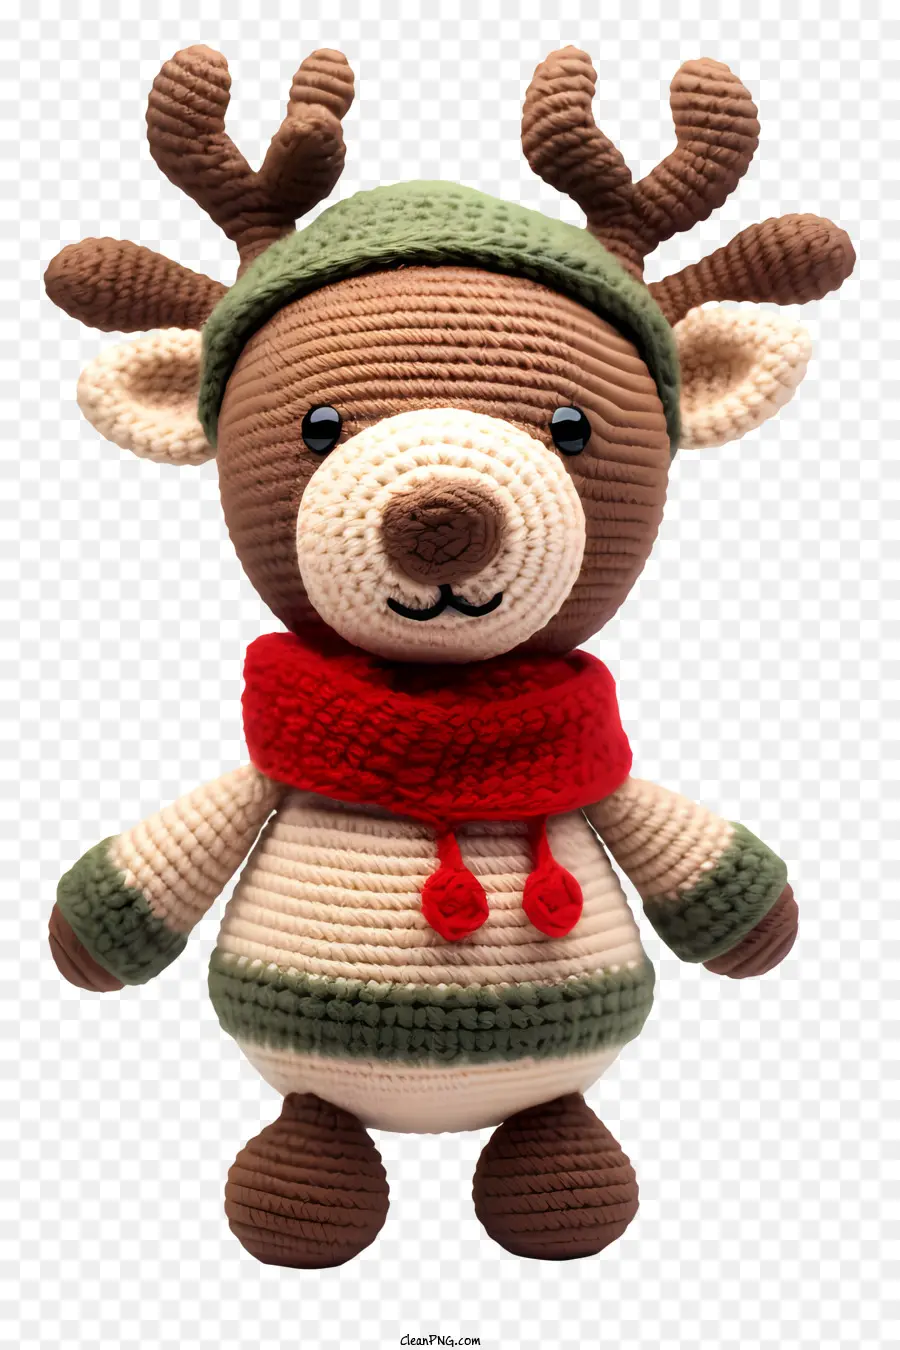 Weihnachtsdekoration - Häkelner Teddybär mit roten Schal und grüner Weihnachtsmannhut